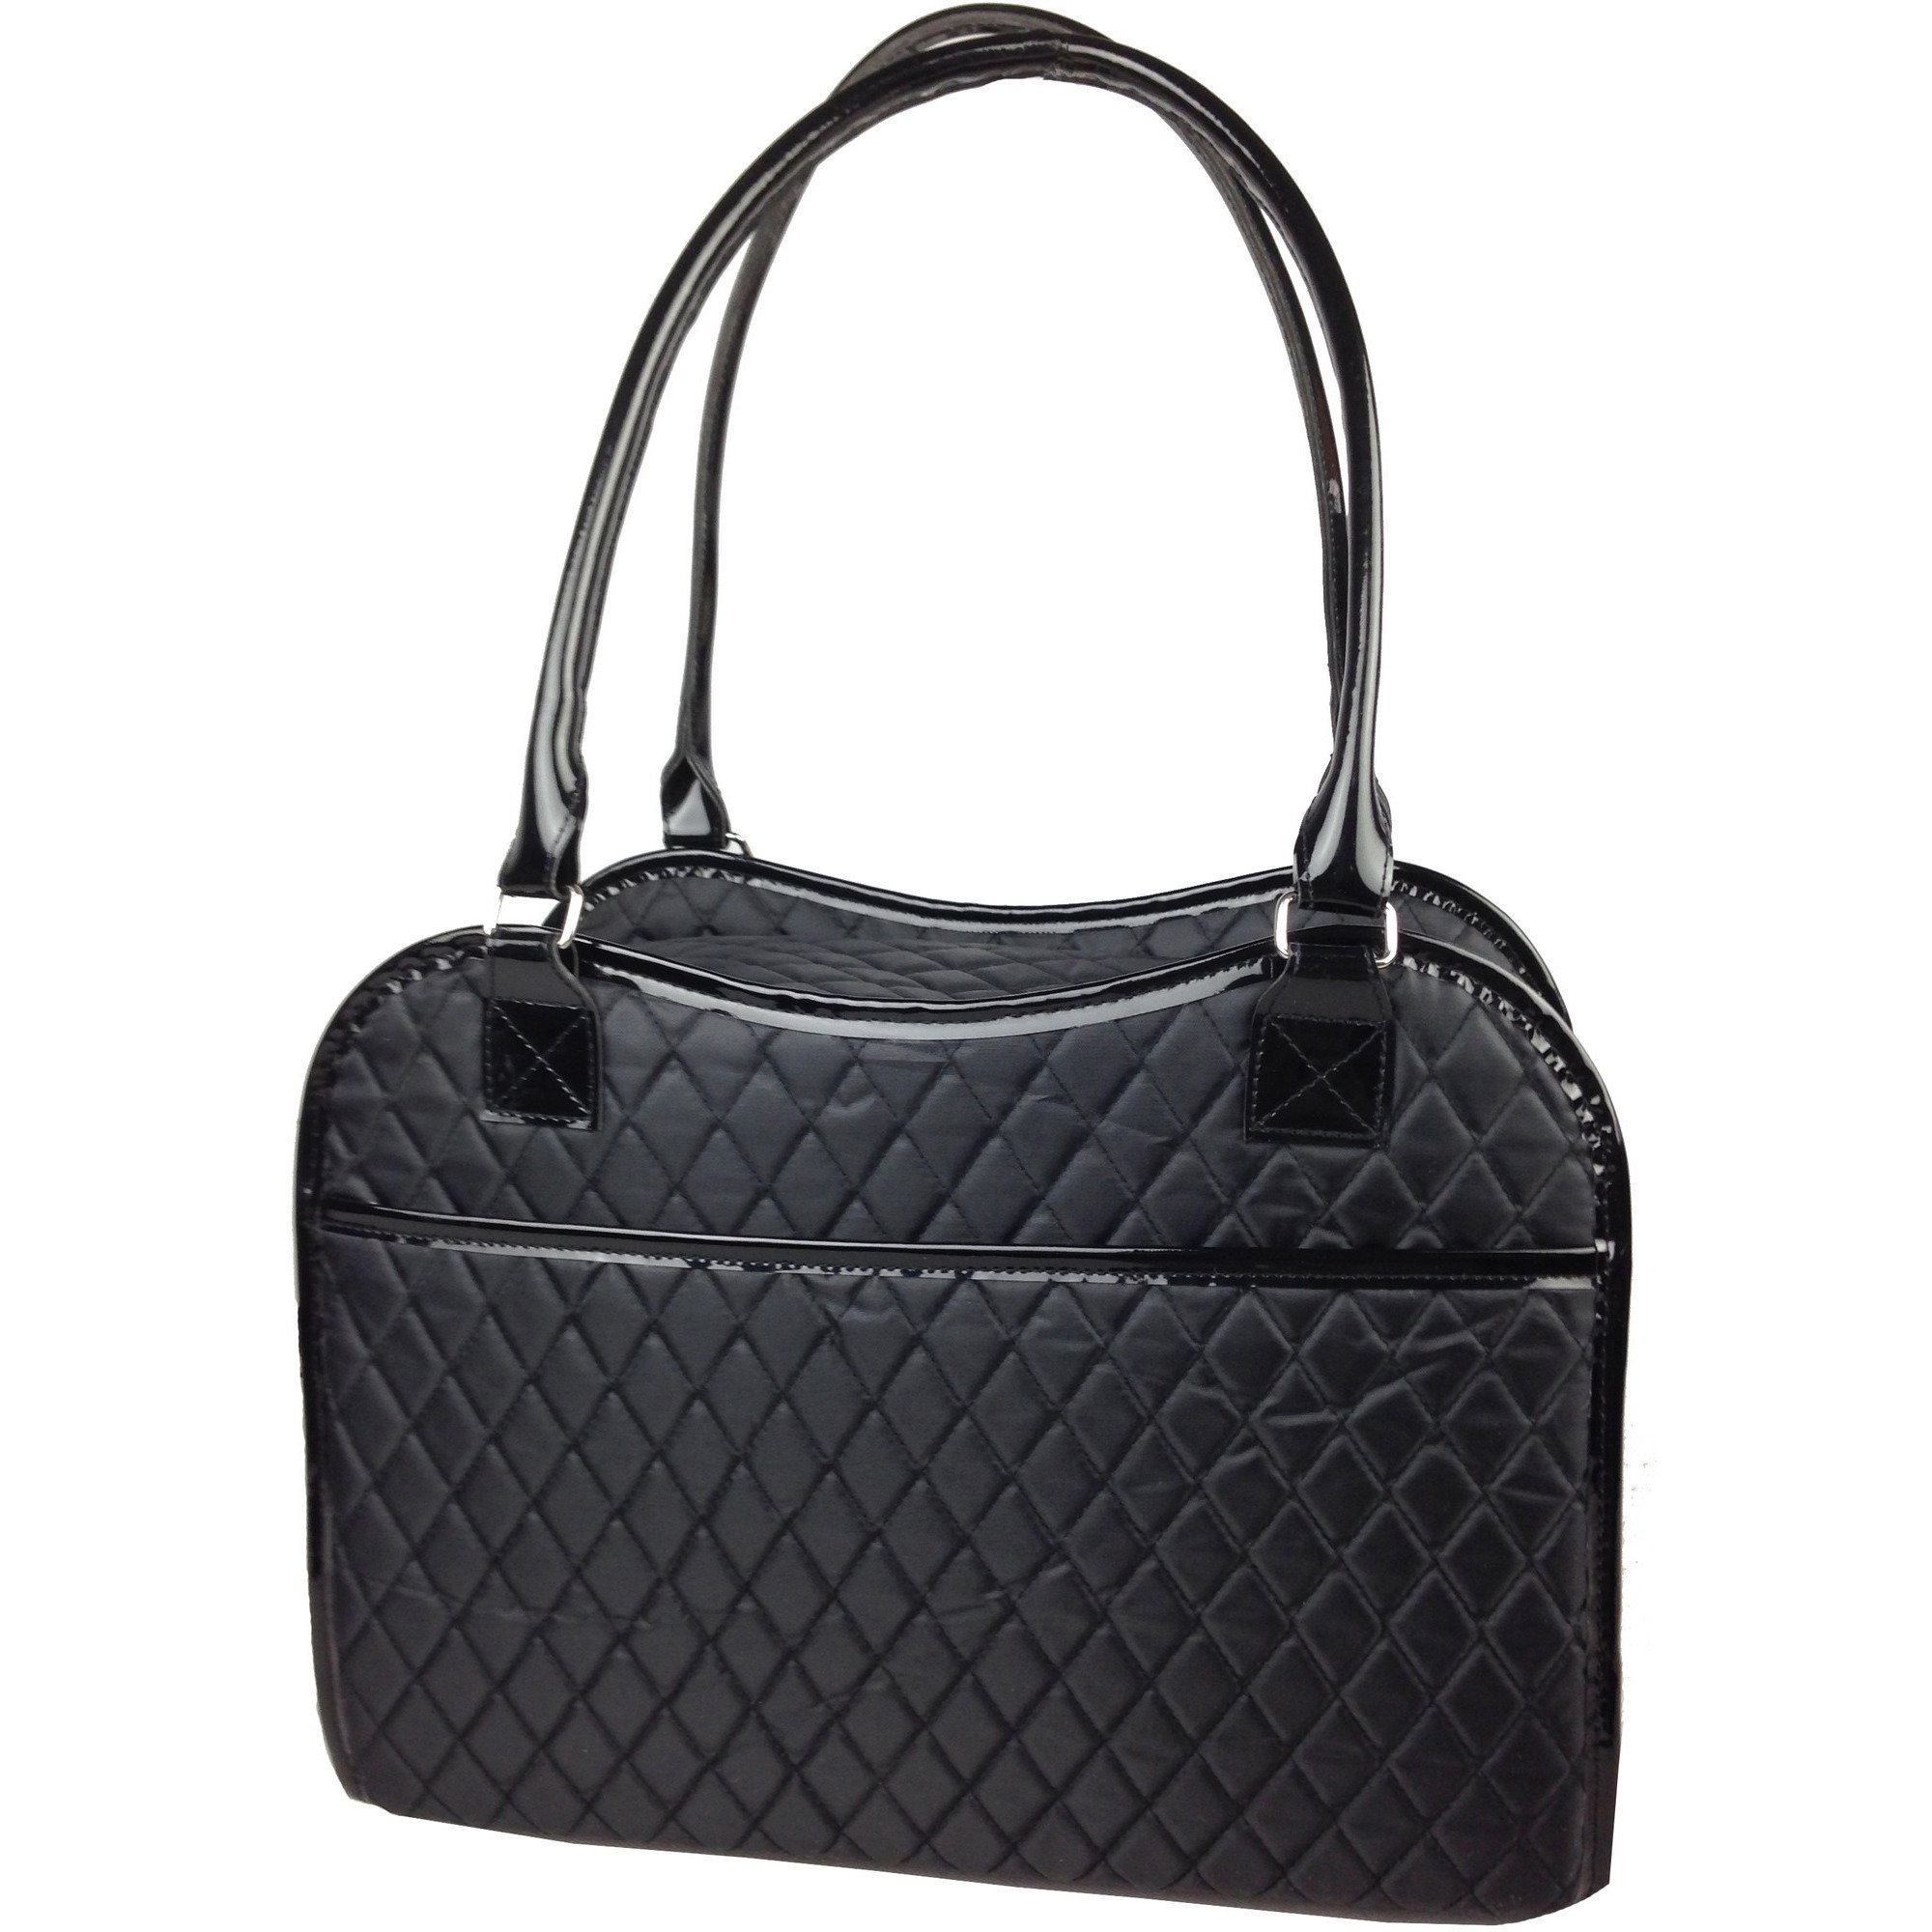 Exquisite' Handbag Fashion Pet Carrier - Black 